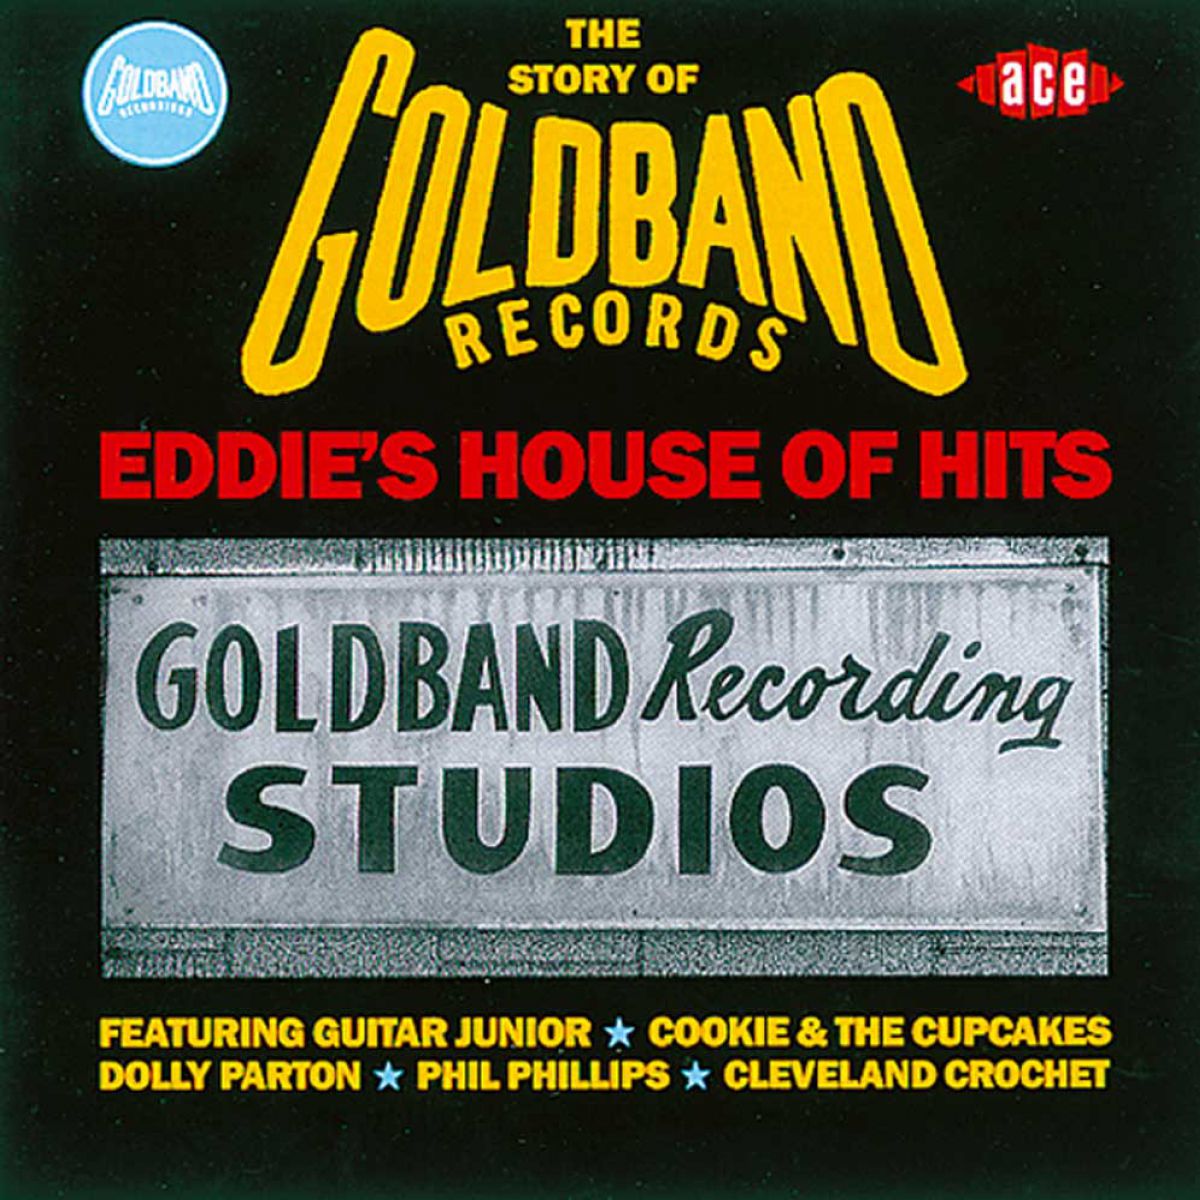 EddiesHouseOfHits-CD_1200_1200